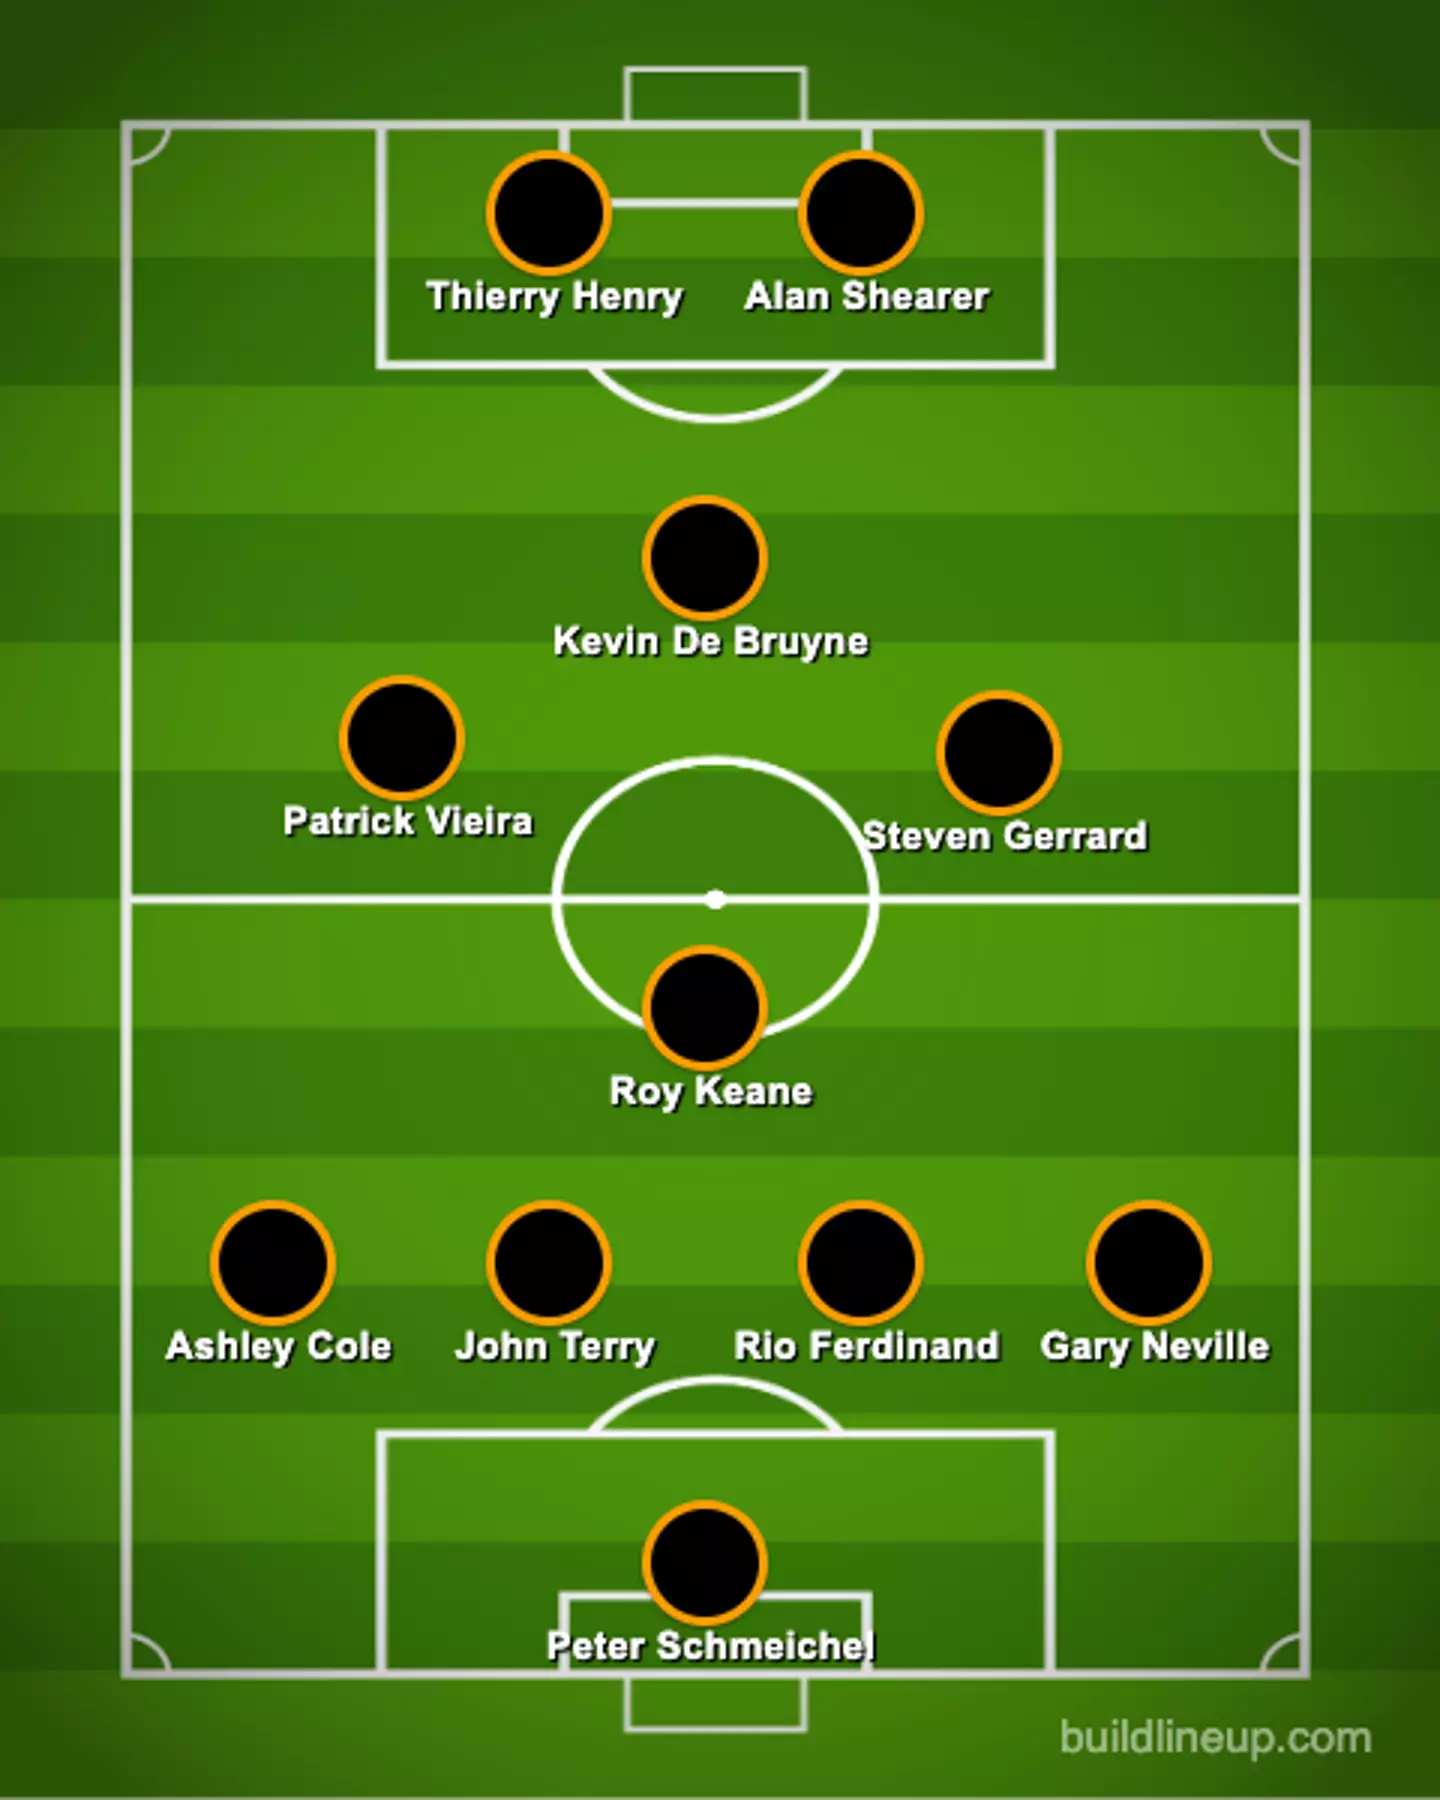 The best Premier League team according to AI. Image: buildlineup